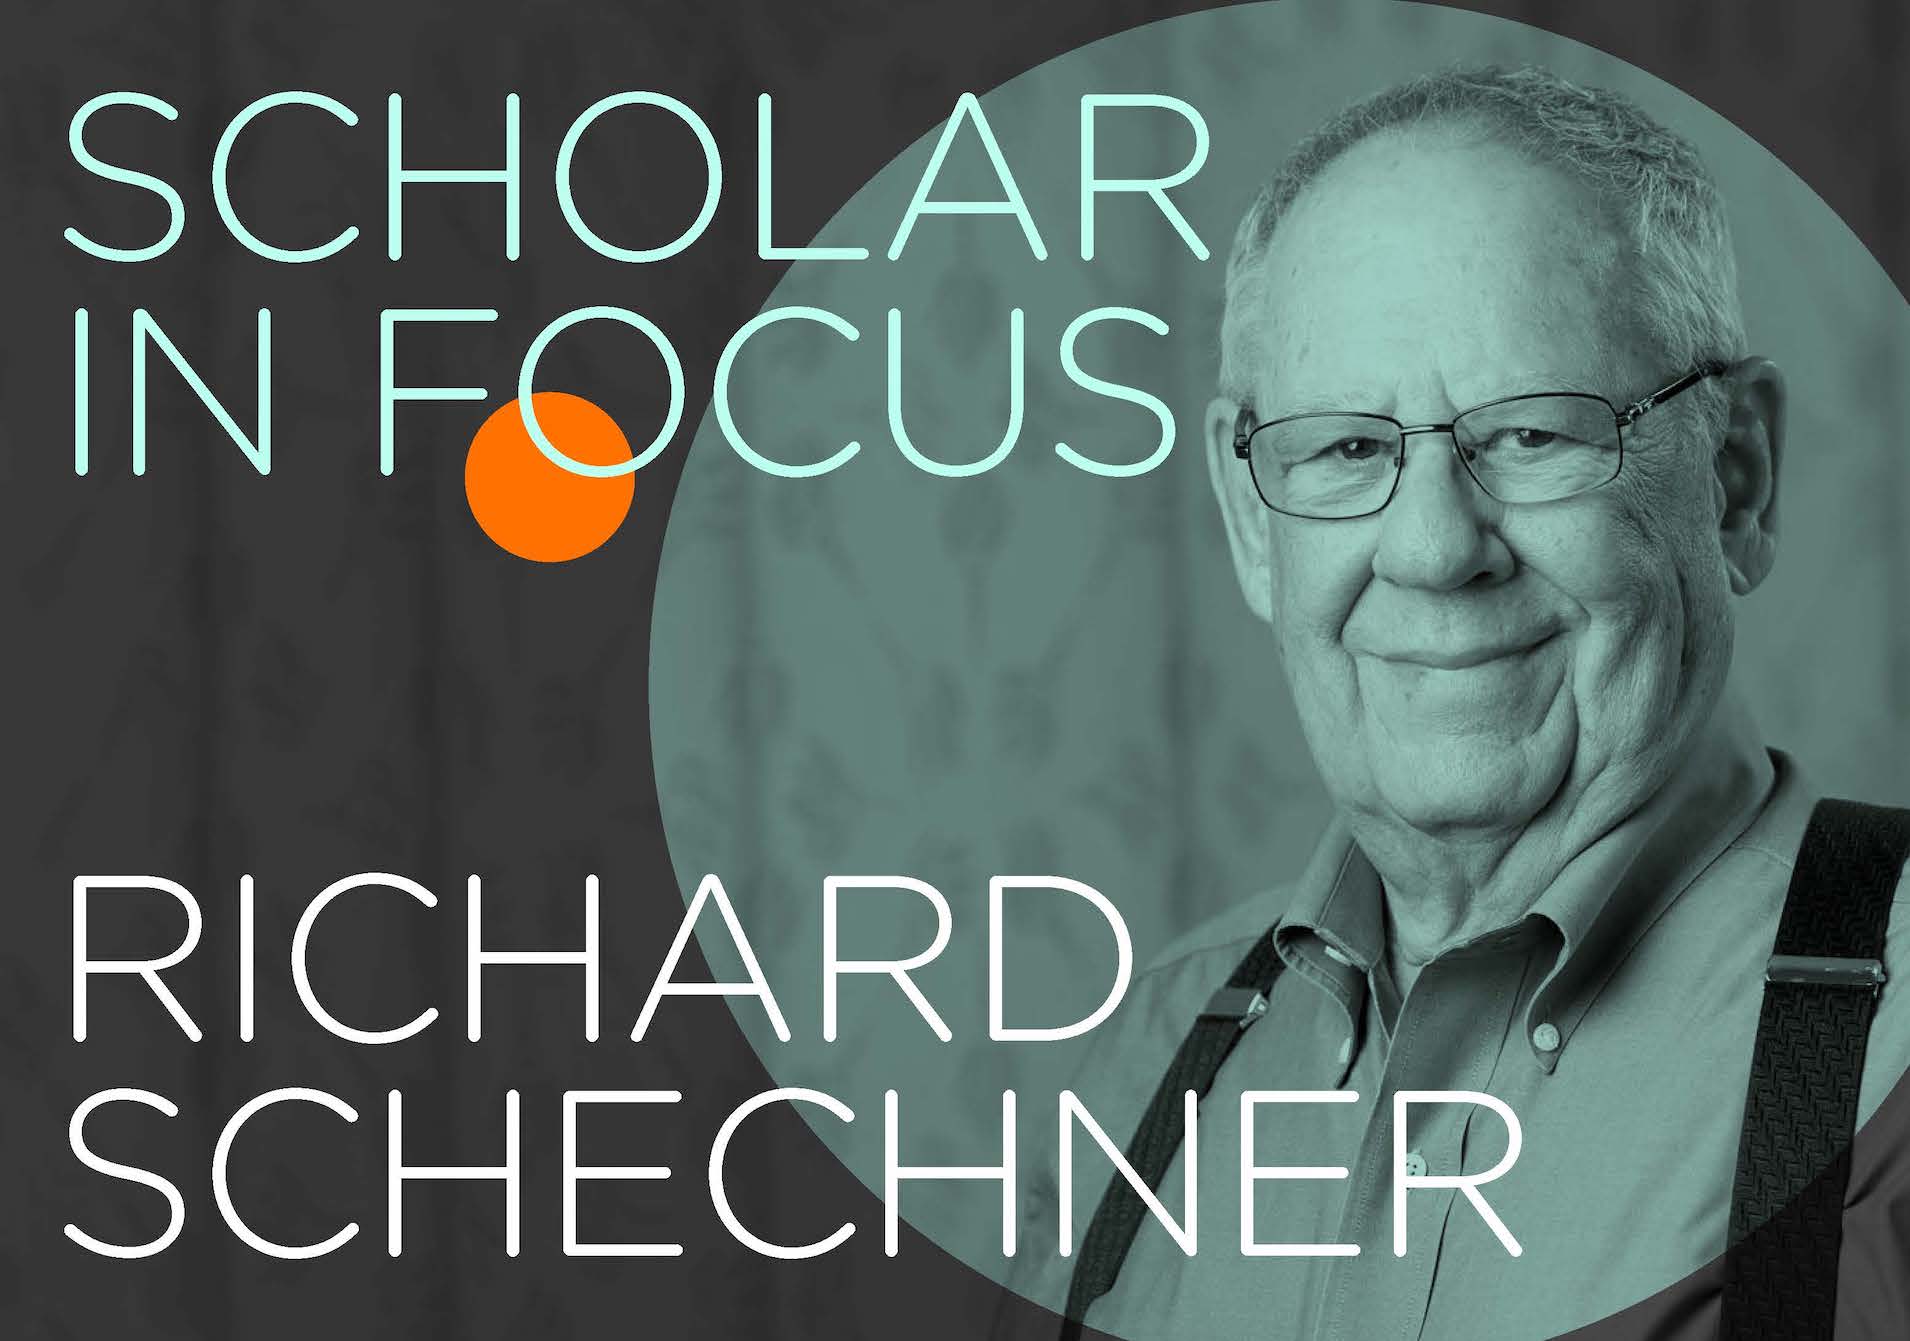 Richard Schechner